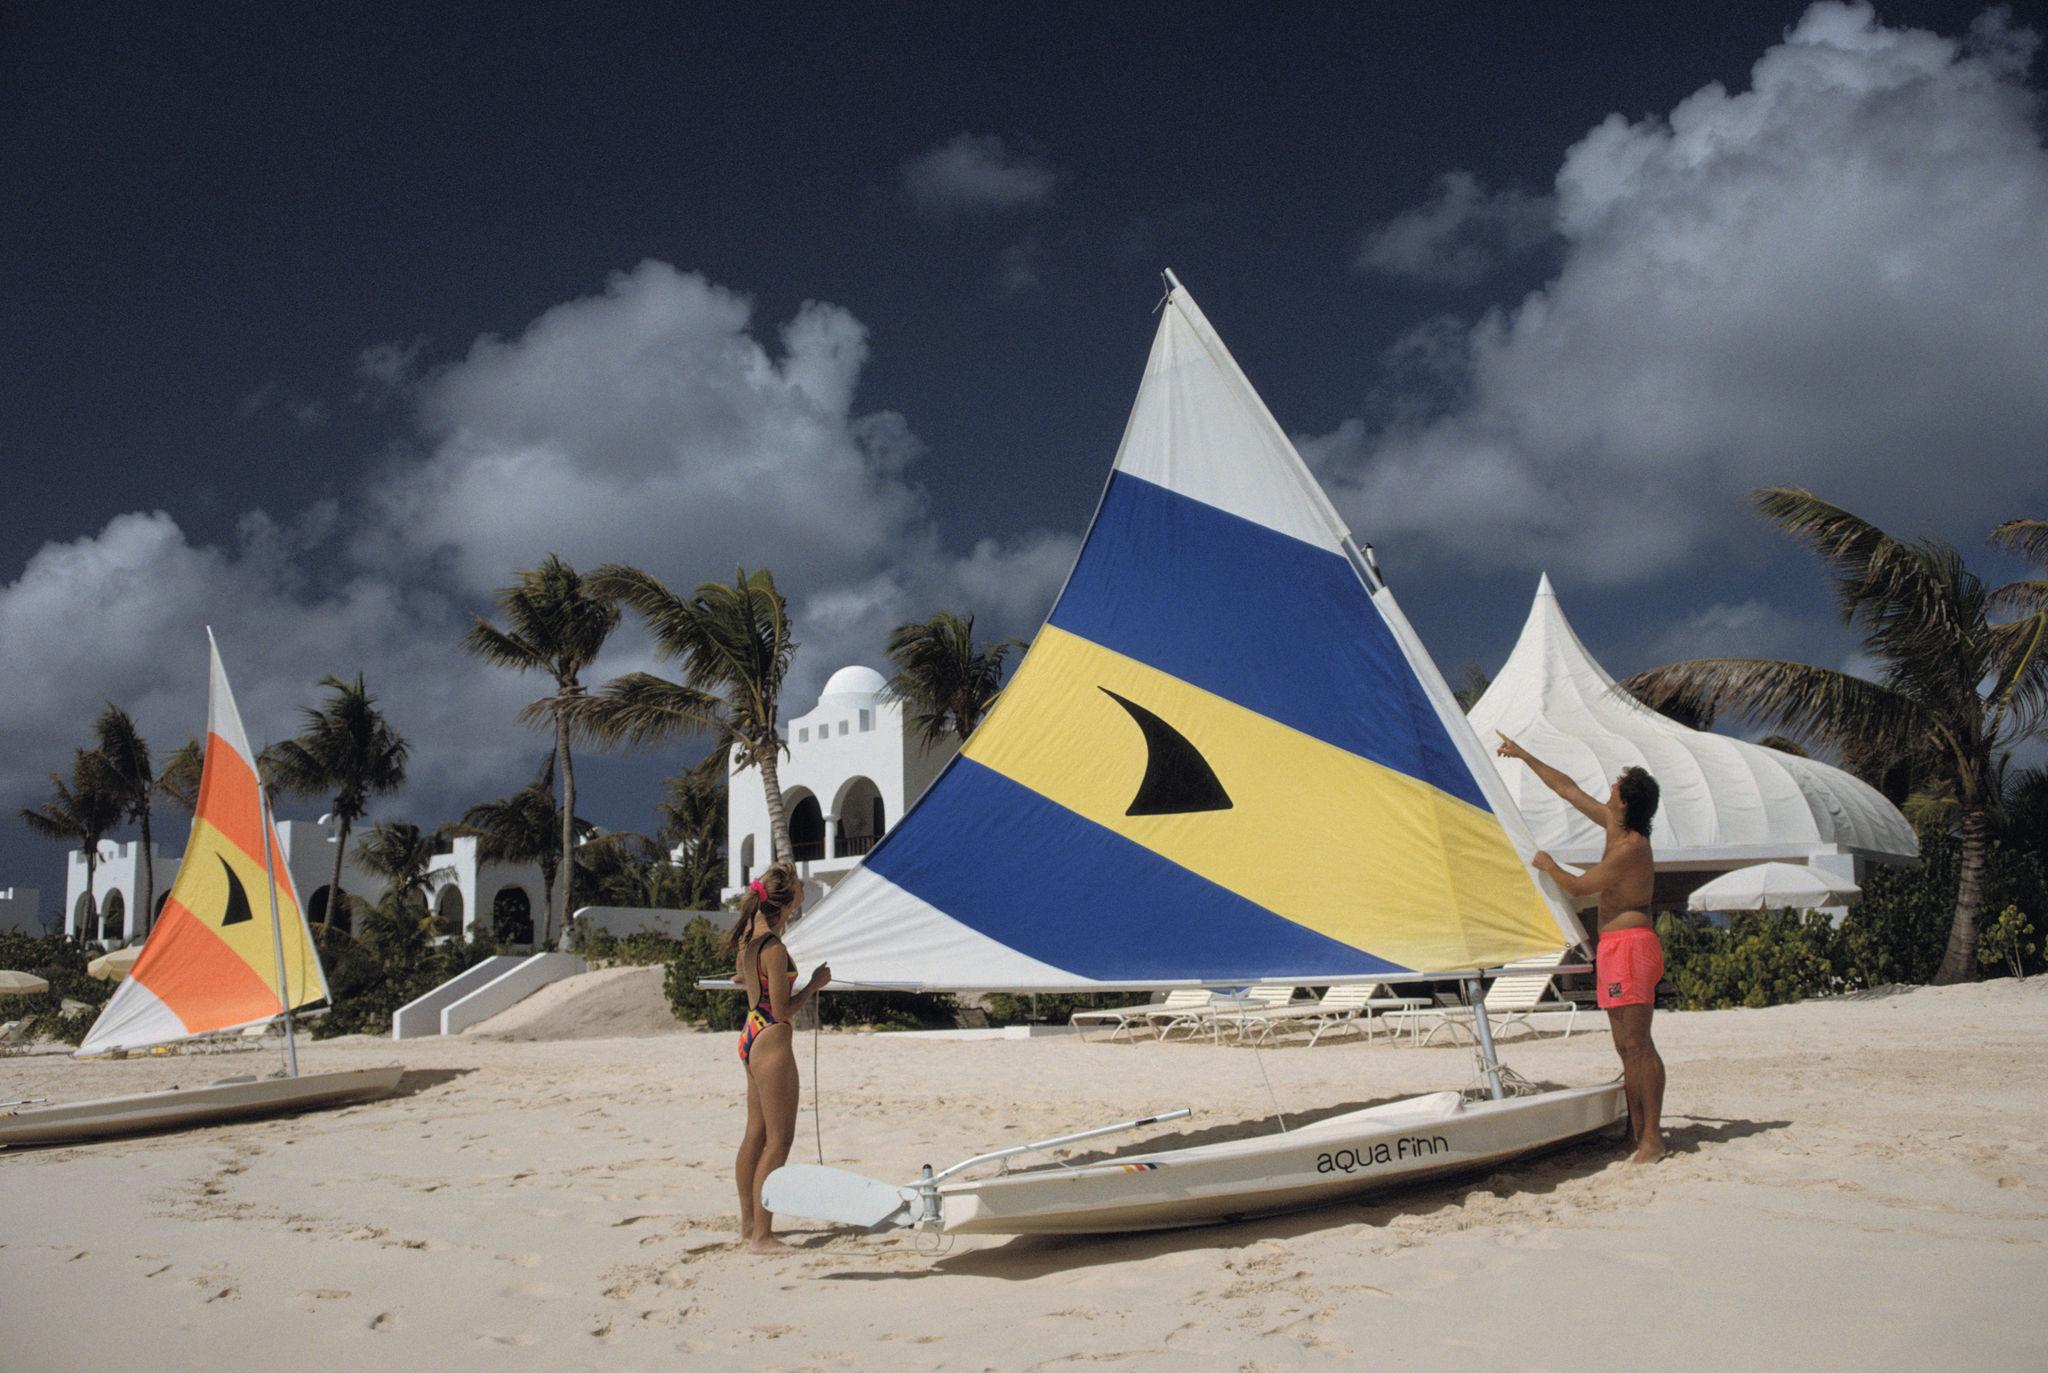 Segeln in Anguilla' 1992 Slim Aarons Limitierte Nachlassausgabe Druck 
Ein Ehepaar stellt das Segel seines Beibootes in einem Luxusresort auf der Insel Anguilla in den Westindischen Inseln ein, Januar 1992. 

Slim Aarons Chromogenic C Druck 
Später